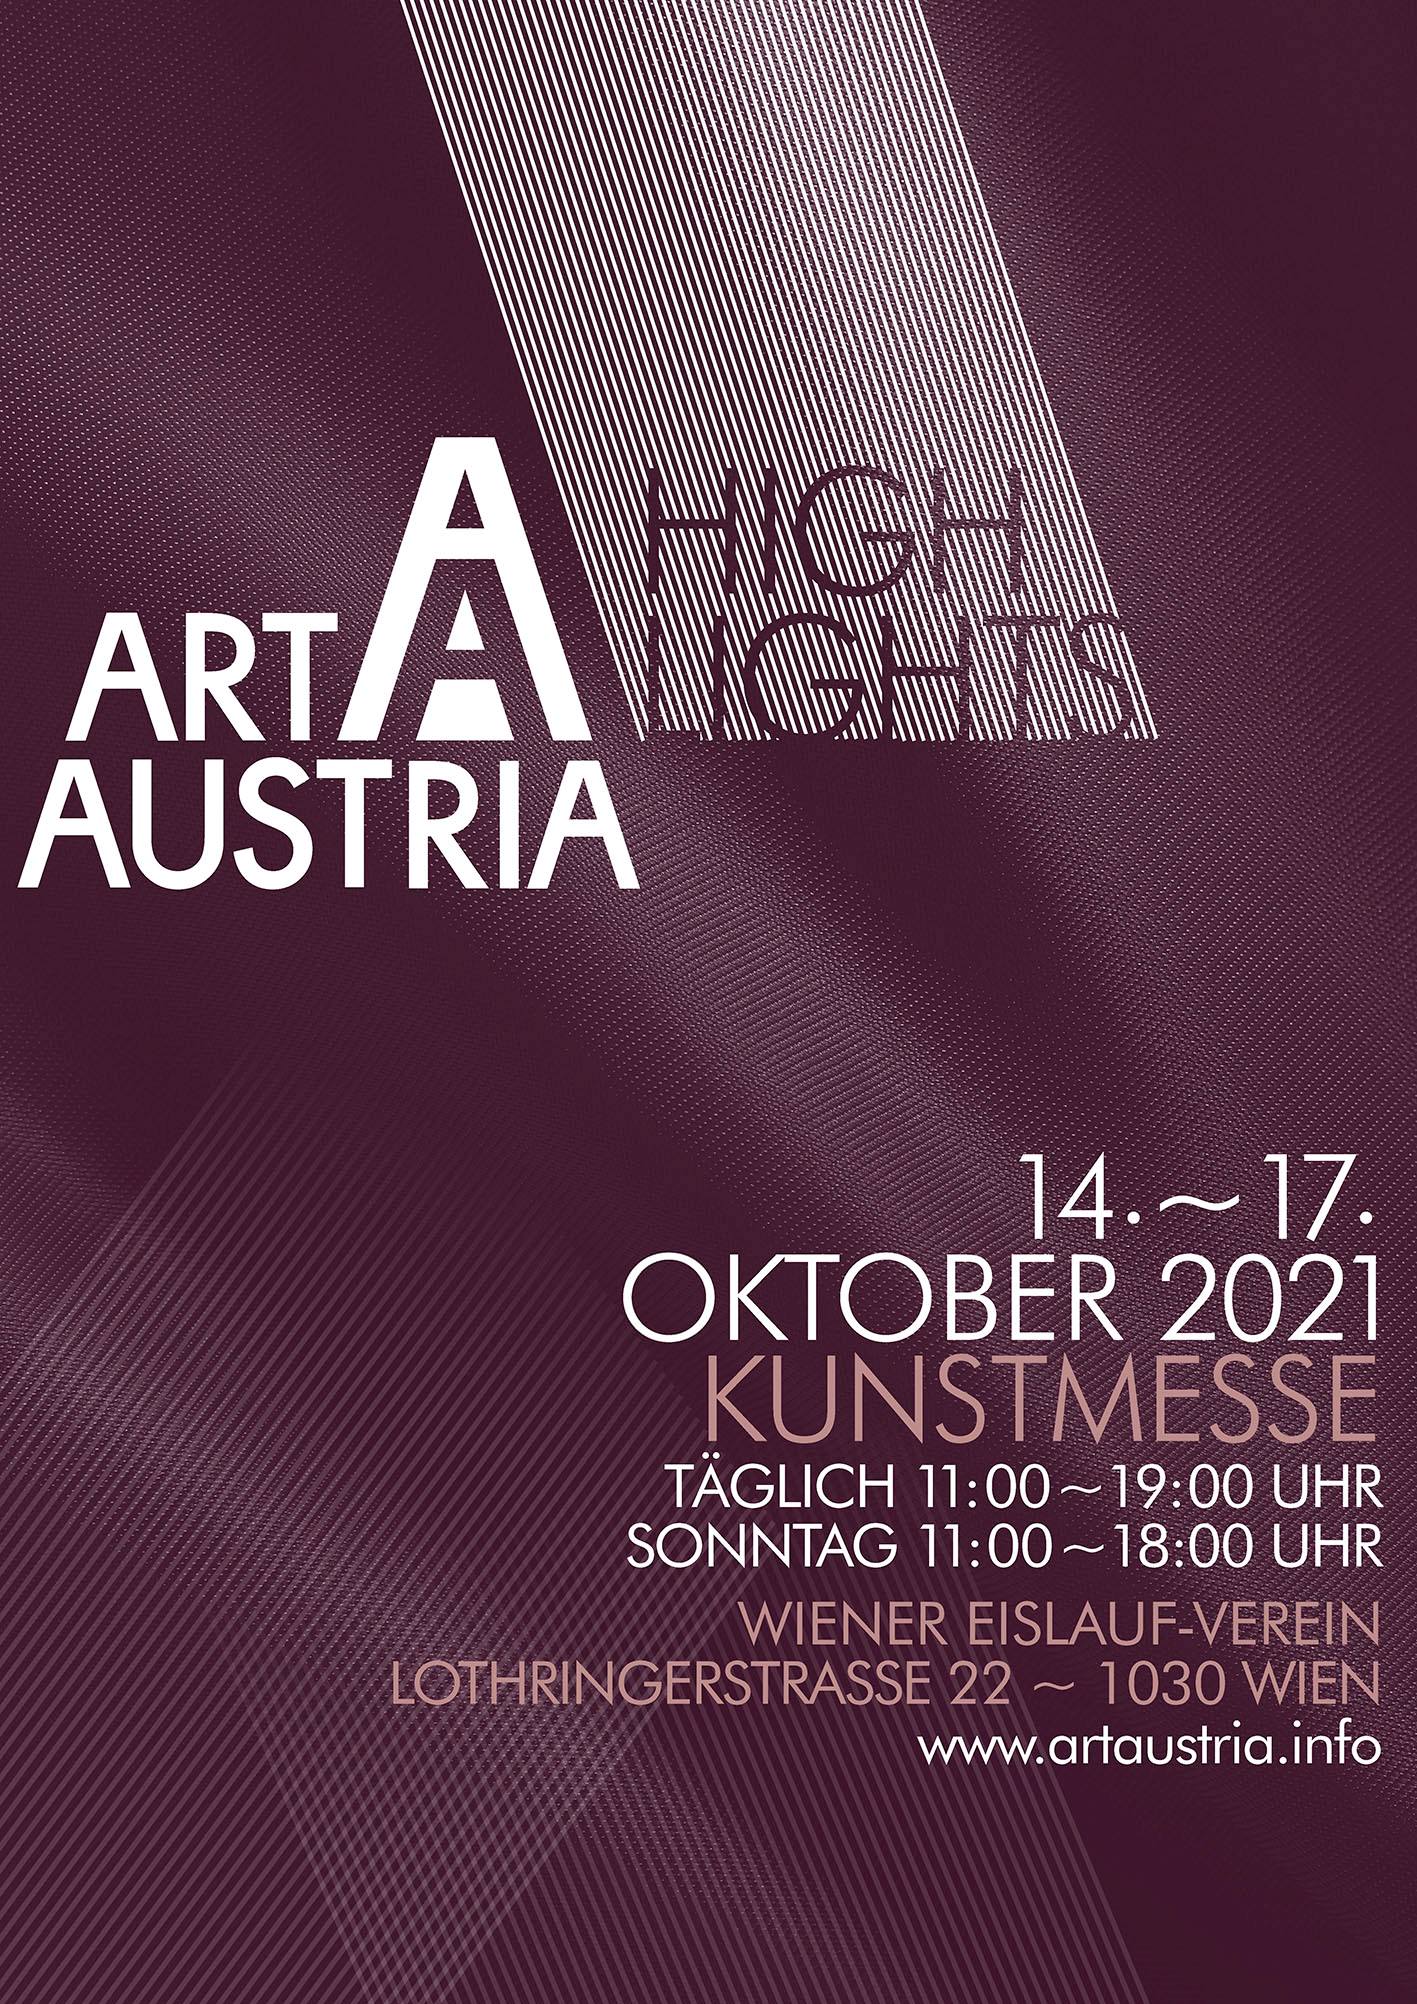 Art Austria Highlights 2021 Kunstmesse an einer Sensations-Location